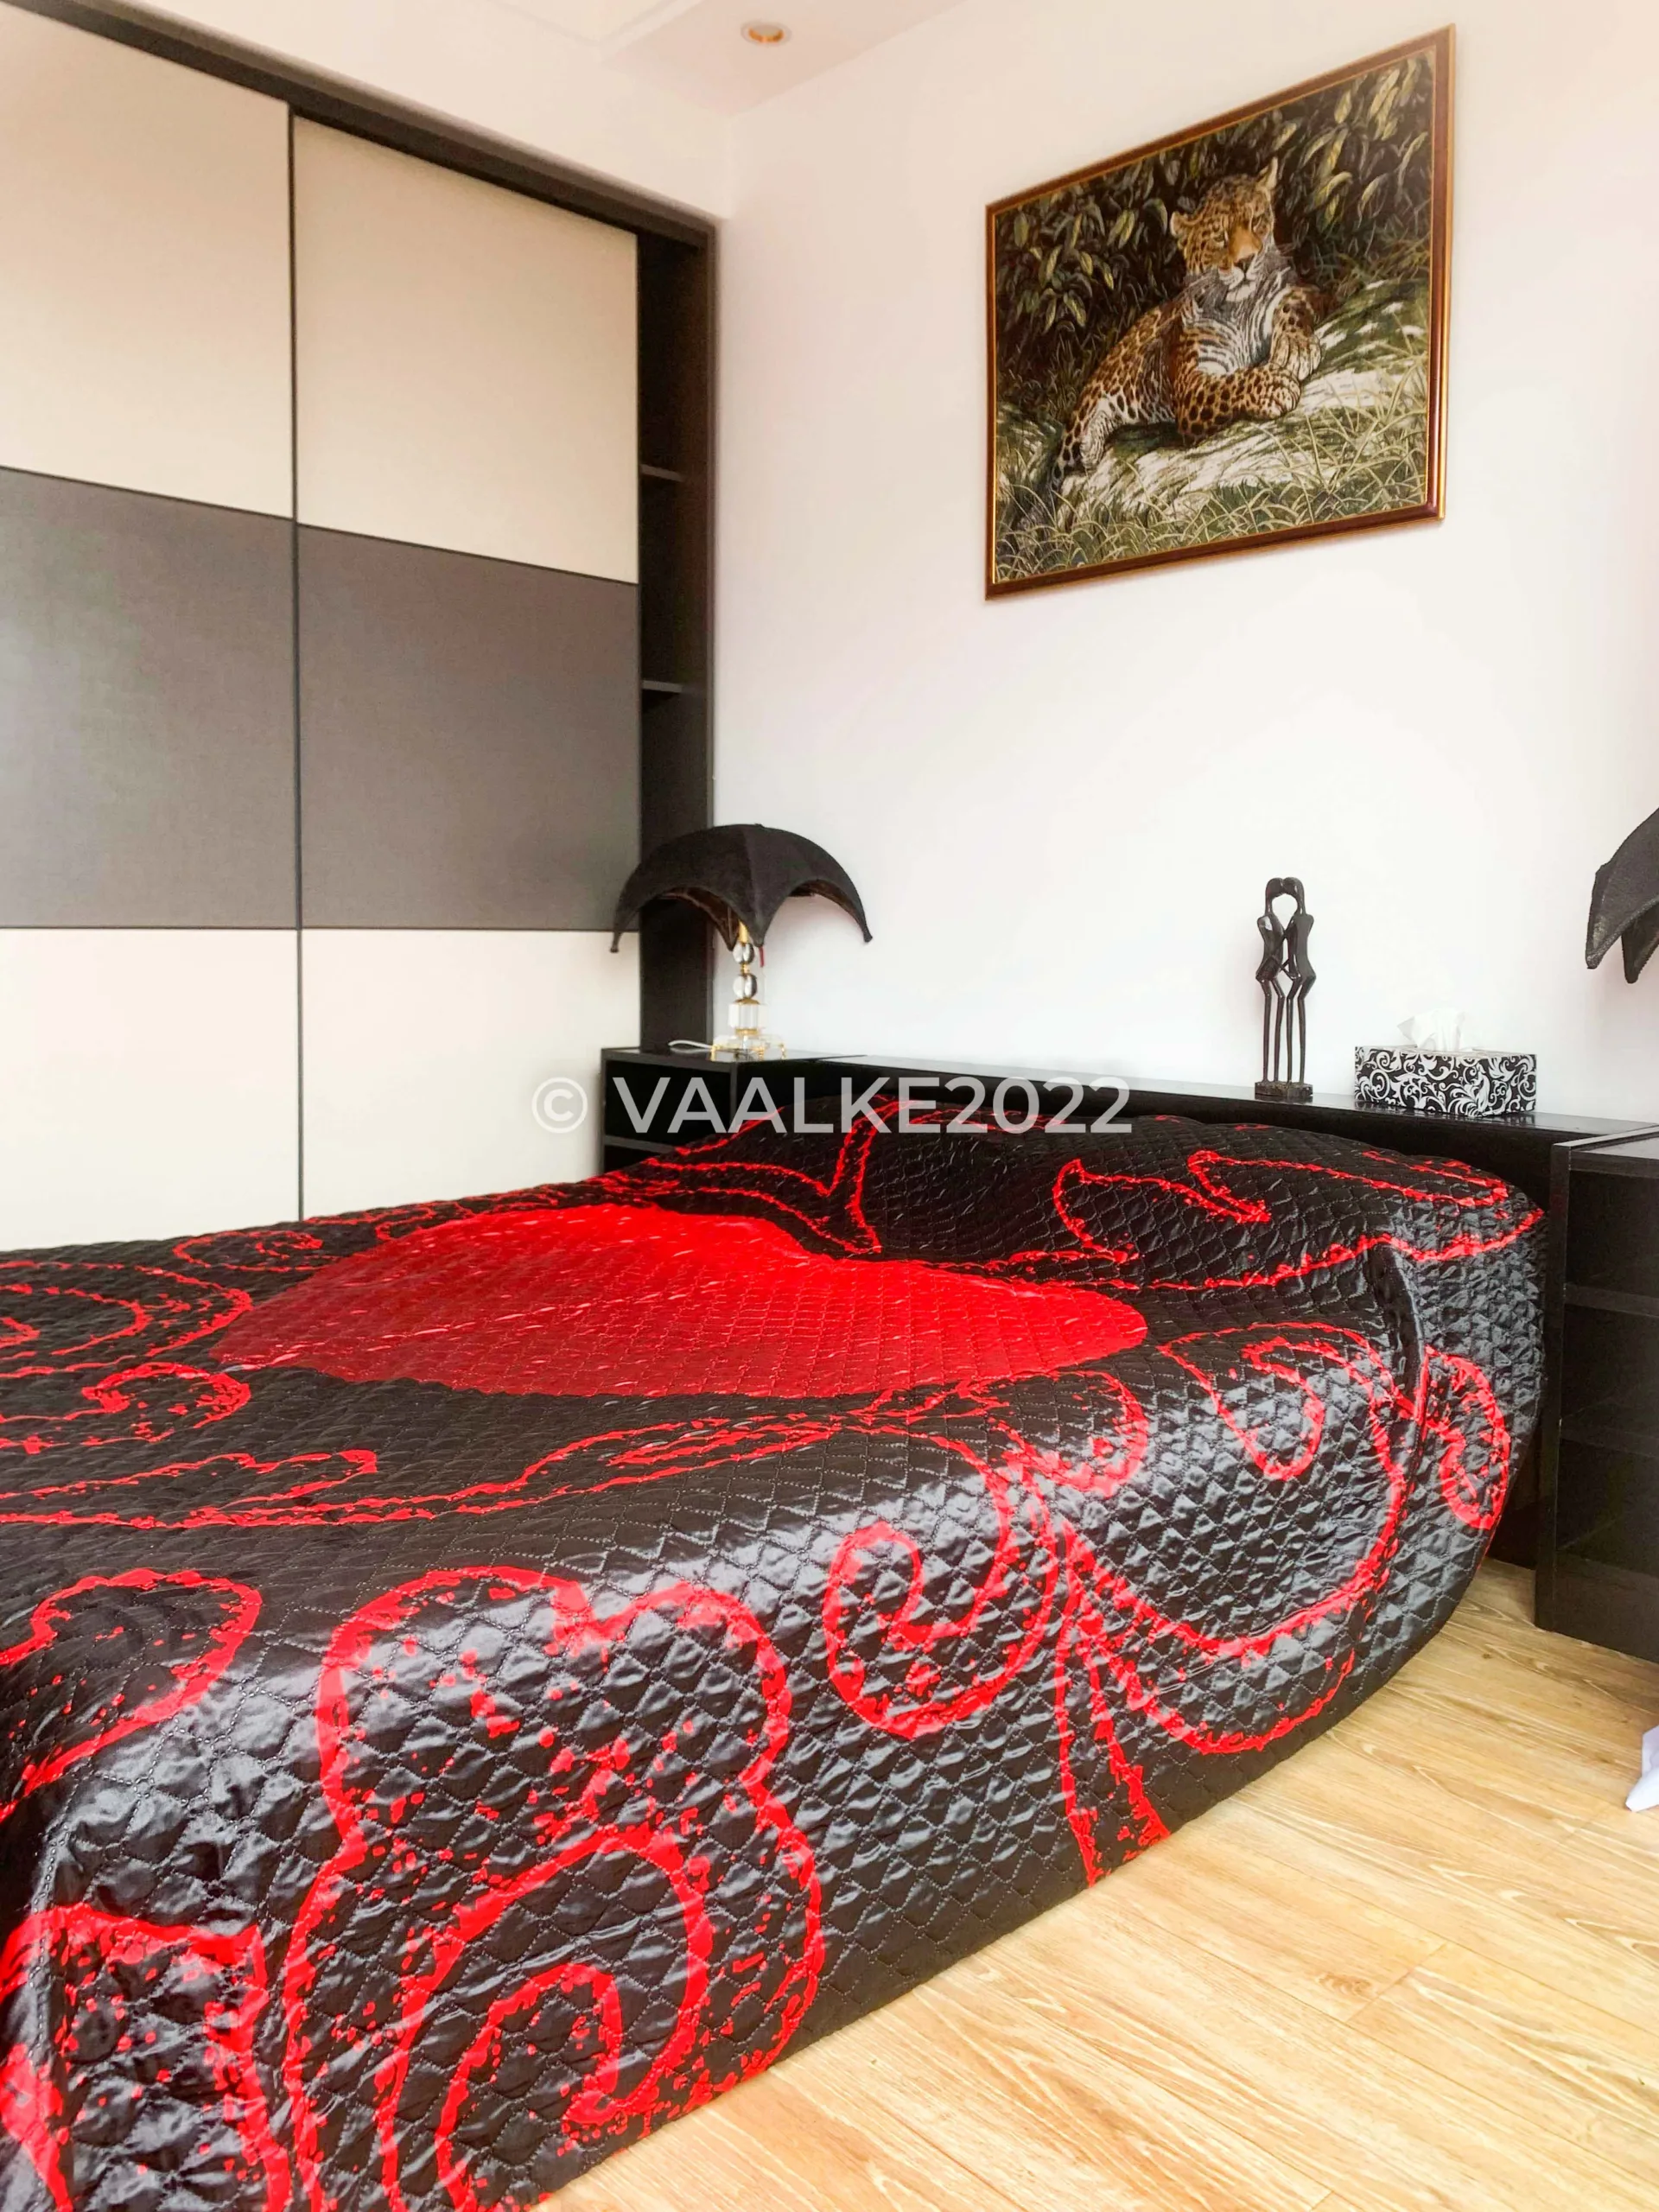 2 bedroom furnished in lavington nairobi